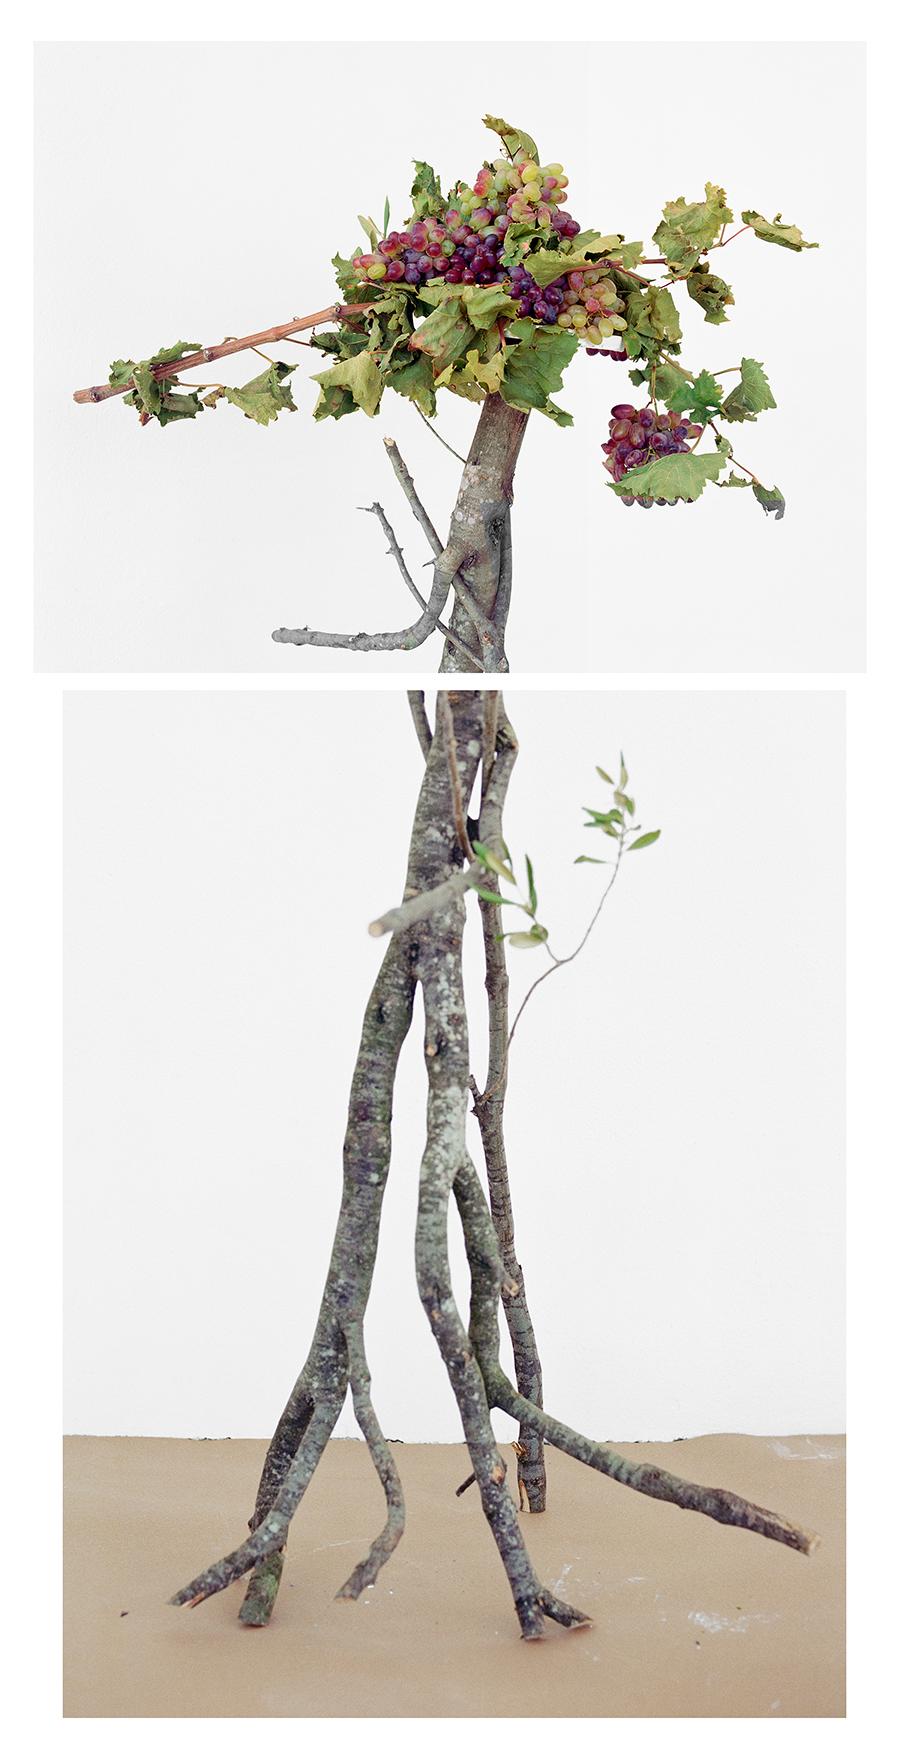 David Halliday Still-Life Photograph – Walking Grapes: Figurative Stillleben-Fotografie von Trauben und Zweigen